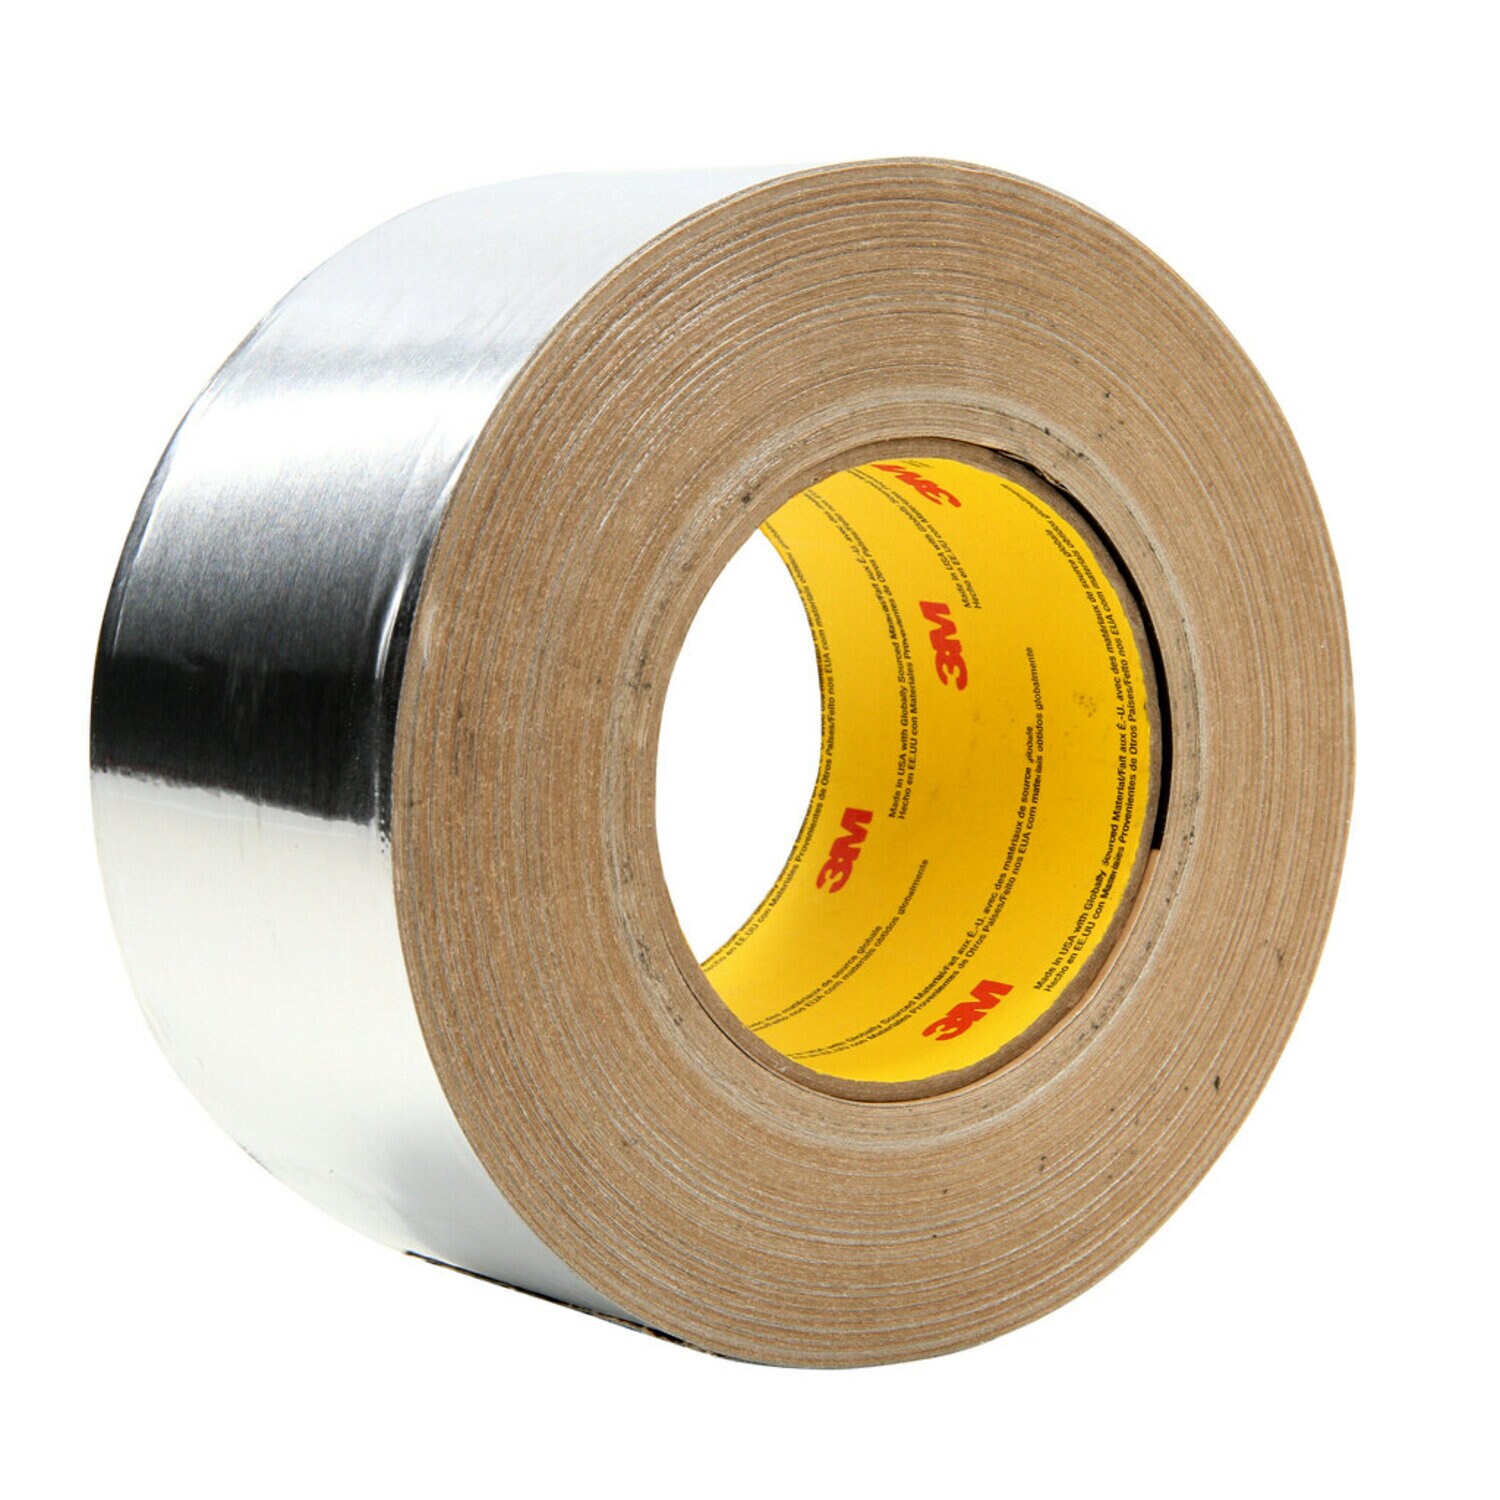 7010379729 - 3M Aluminum Foil Tape 439, Silver, 3 1/4 in x 180 yd, 3.1 mil, 2 rolls
per case